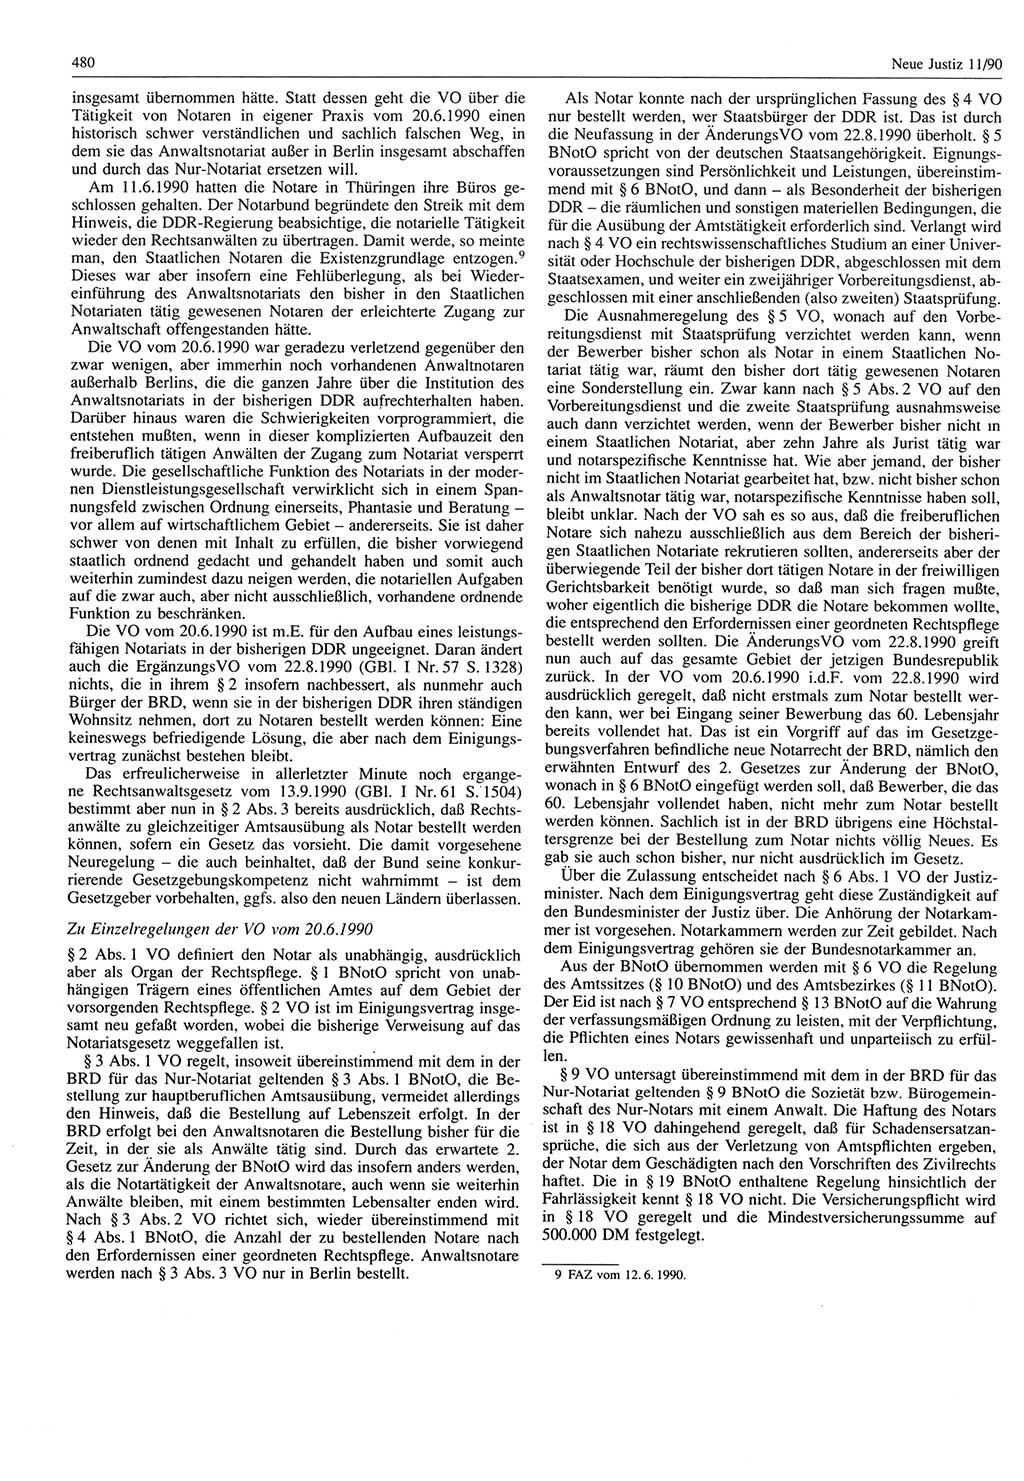 Neue Justiz (NJ), Zeitschrift für Rechtsetzung und Rechtsanwendung [Deutsche Demokratische Republik (DDR)], 44. Jahrgang 1990, Seite 480 (NJ DDR 1990, S. 480)